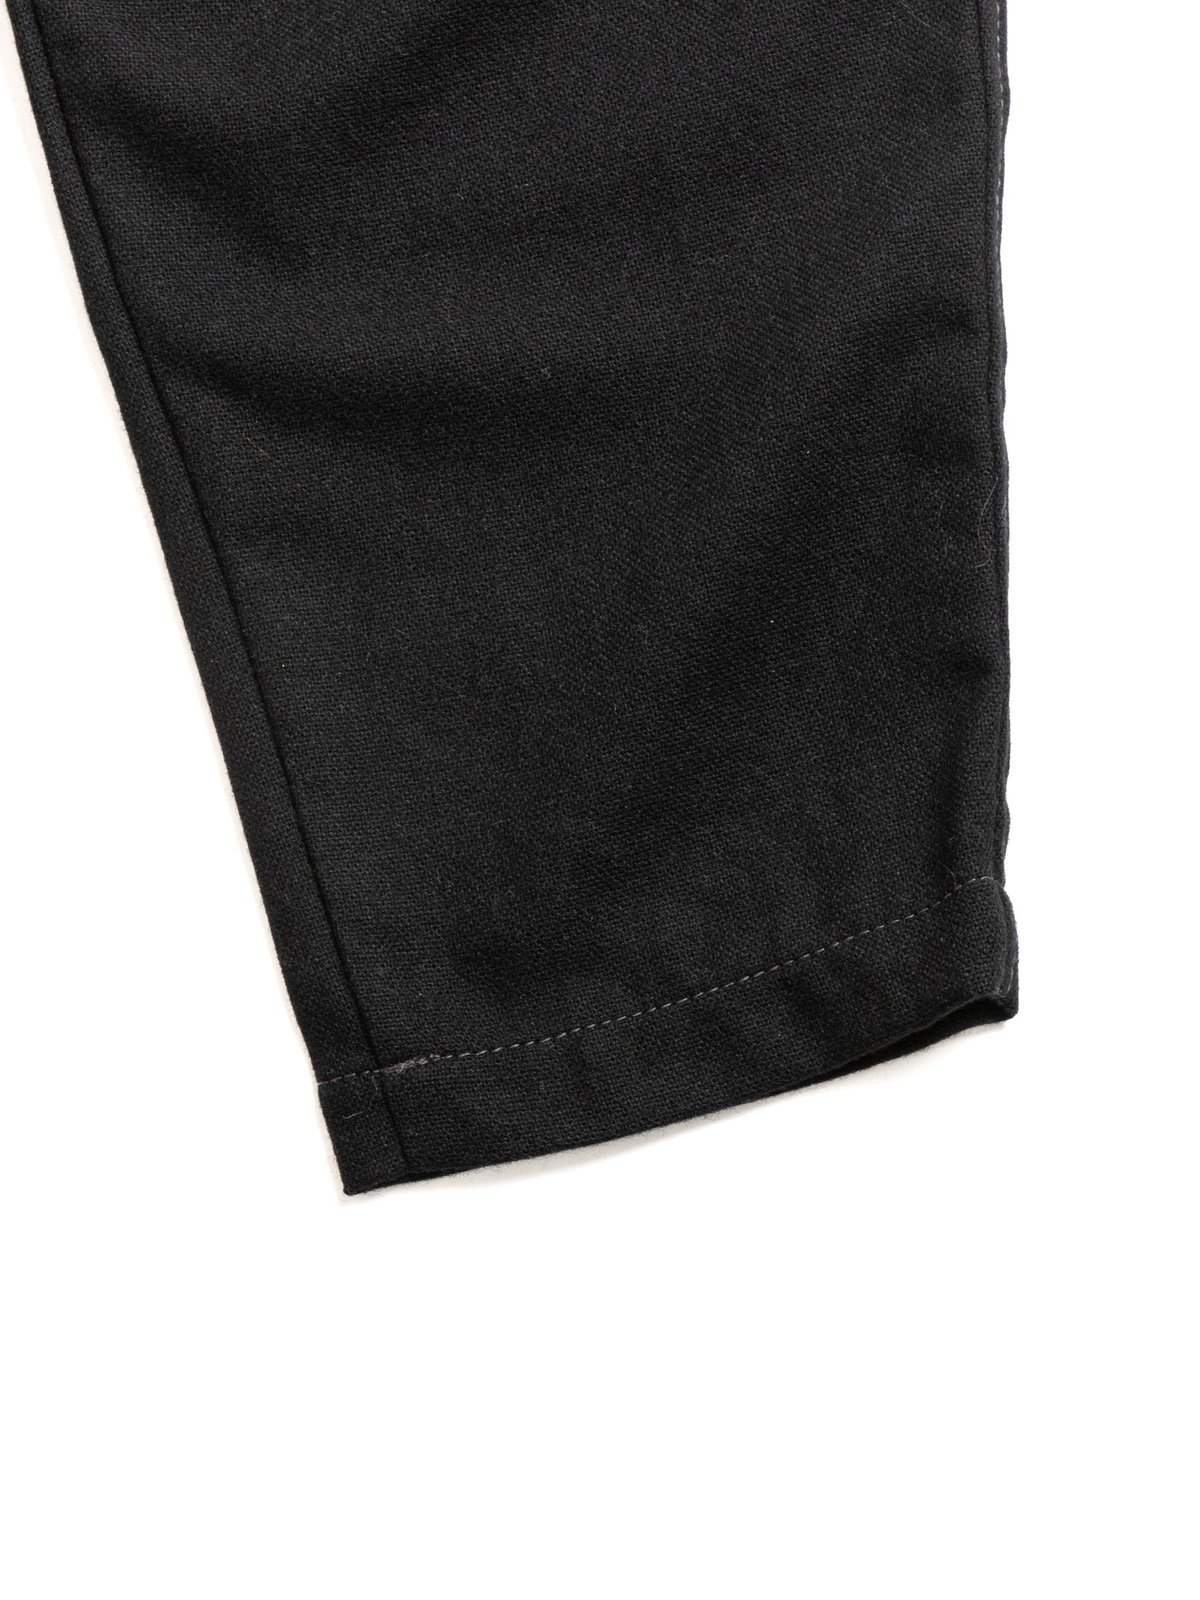 REWOOL TWEED TAPERED PANTS BLACK - Image 4